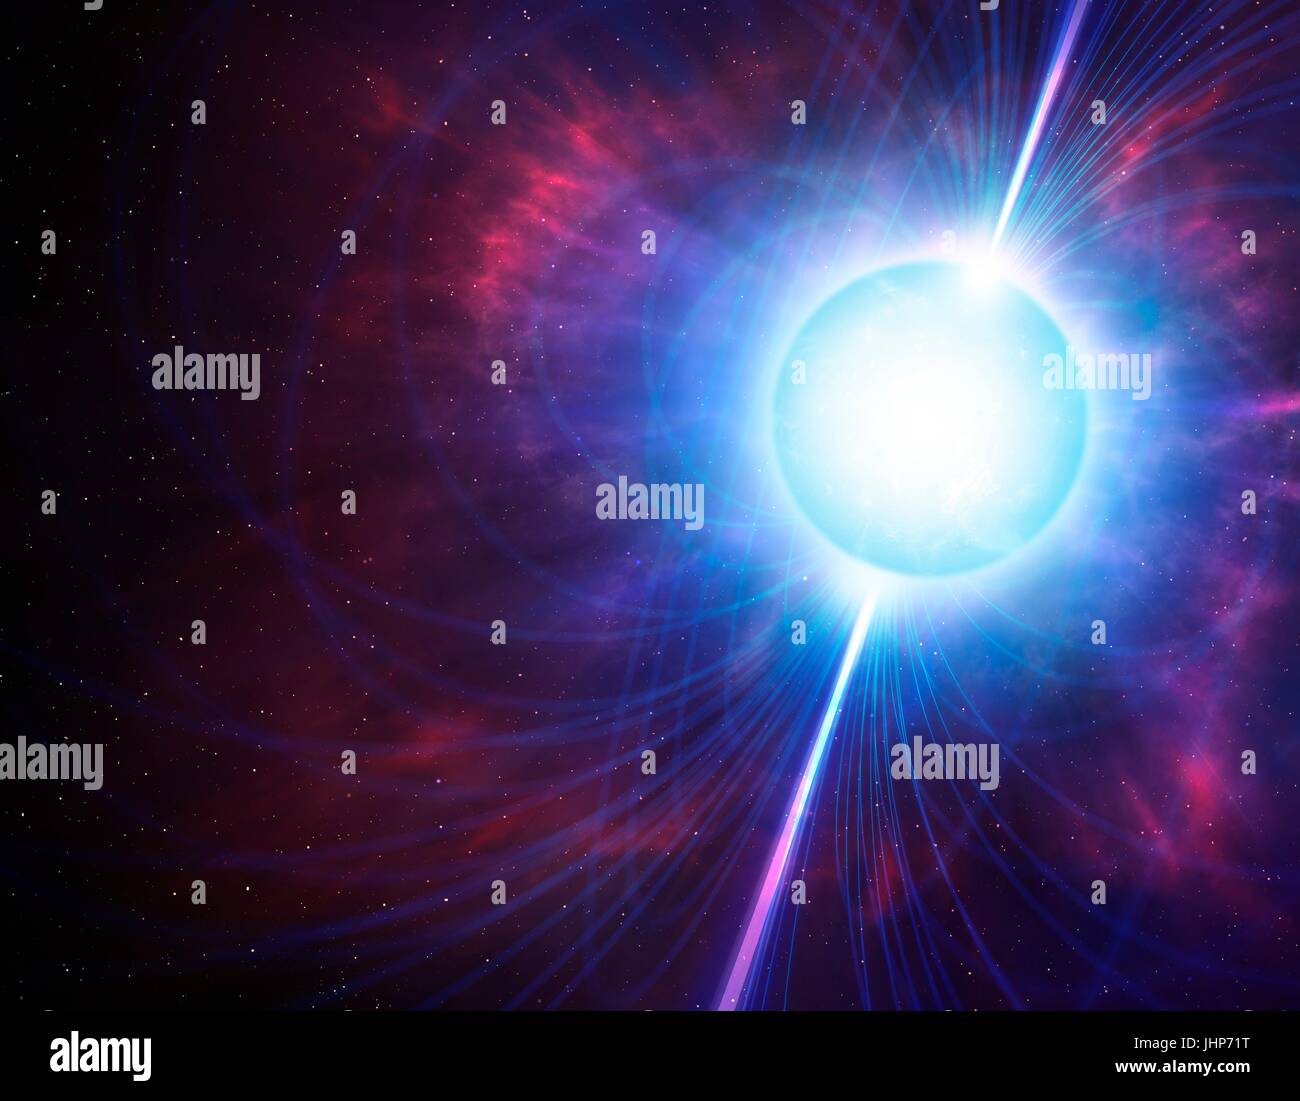 Computer grafica che mostra il campo magnetico (linee) intorno a un magnetar. Un magnetar è un tipo di stella di neutroni con un incredibilmente forte campo magnetico (un milione di miliardi di volte più forte di quella della Terra), che è formata quando alcune stelle subiscono una esplosione di supernovae. Foto Stock